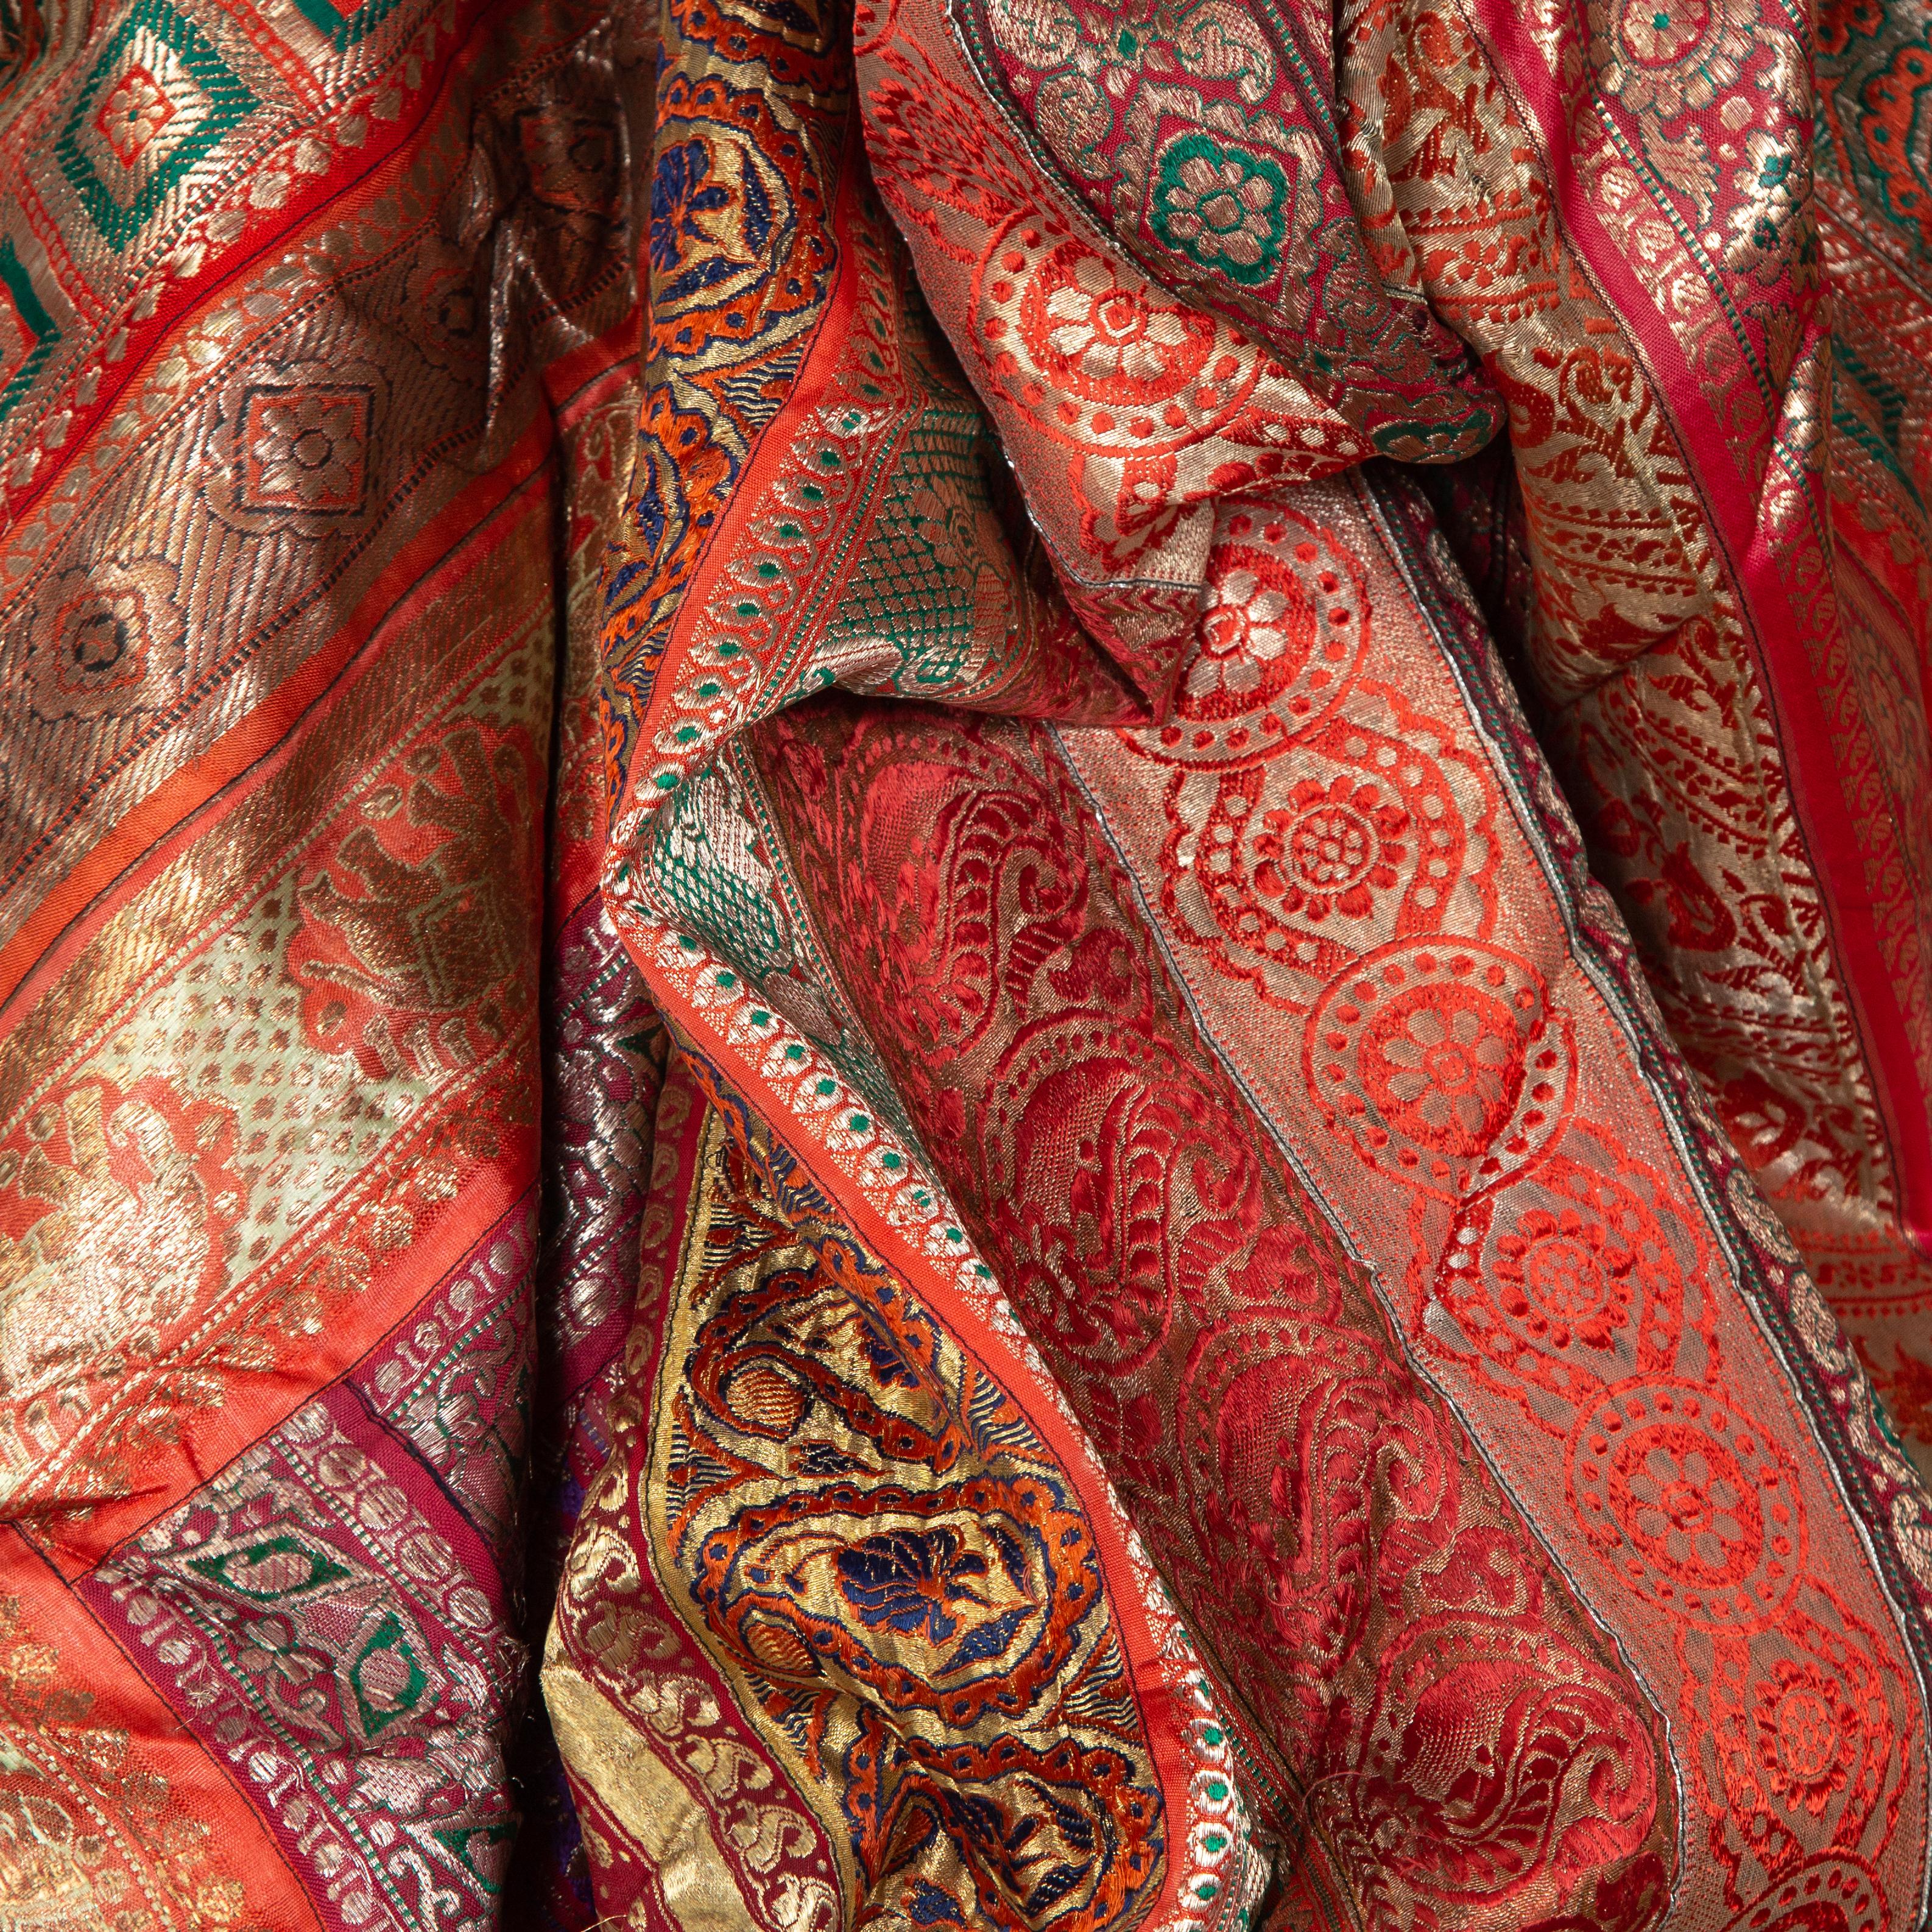 Un grand tissu indien vintage en soie brodée de la seconde moitié du 20e siècle avec des tons rouges, orange, violets, verts et dorés entre autres. Probablement originaire du Rajasthan, ce superbe tissu en soie est constitué de pièces de sari